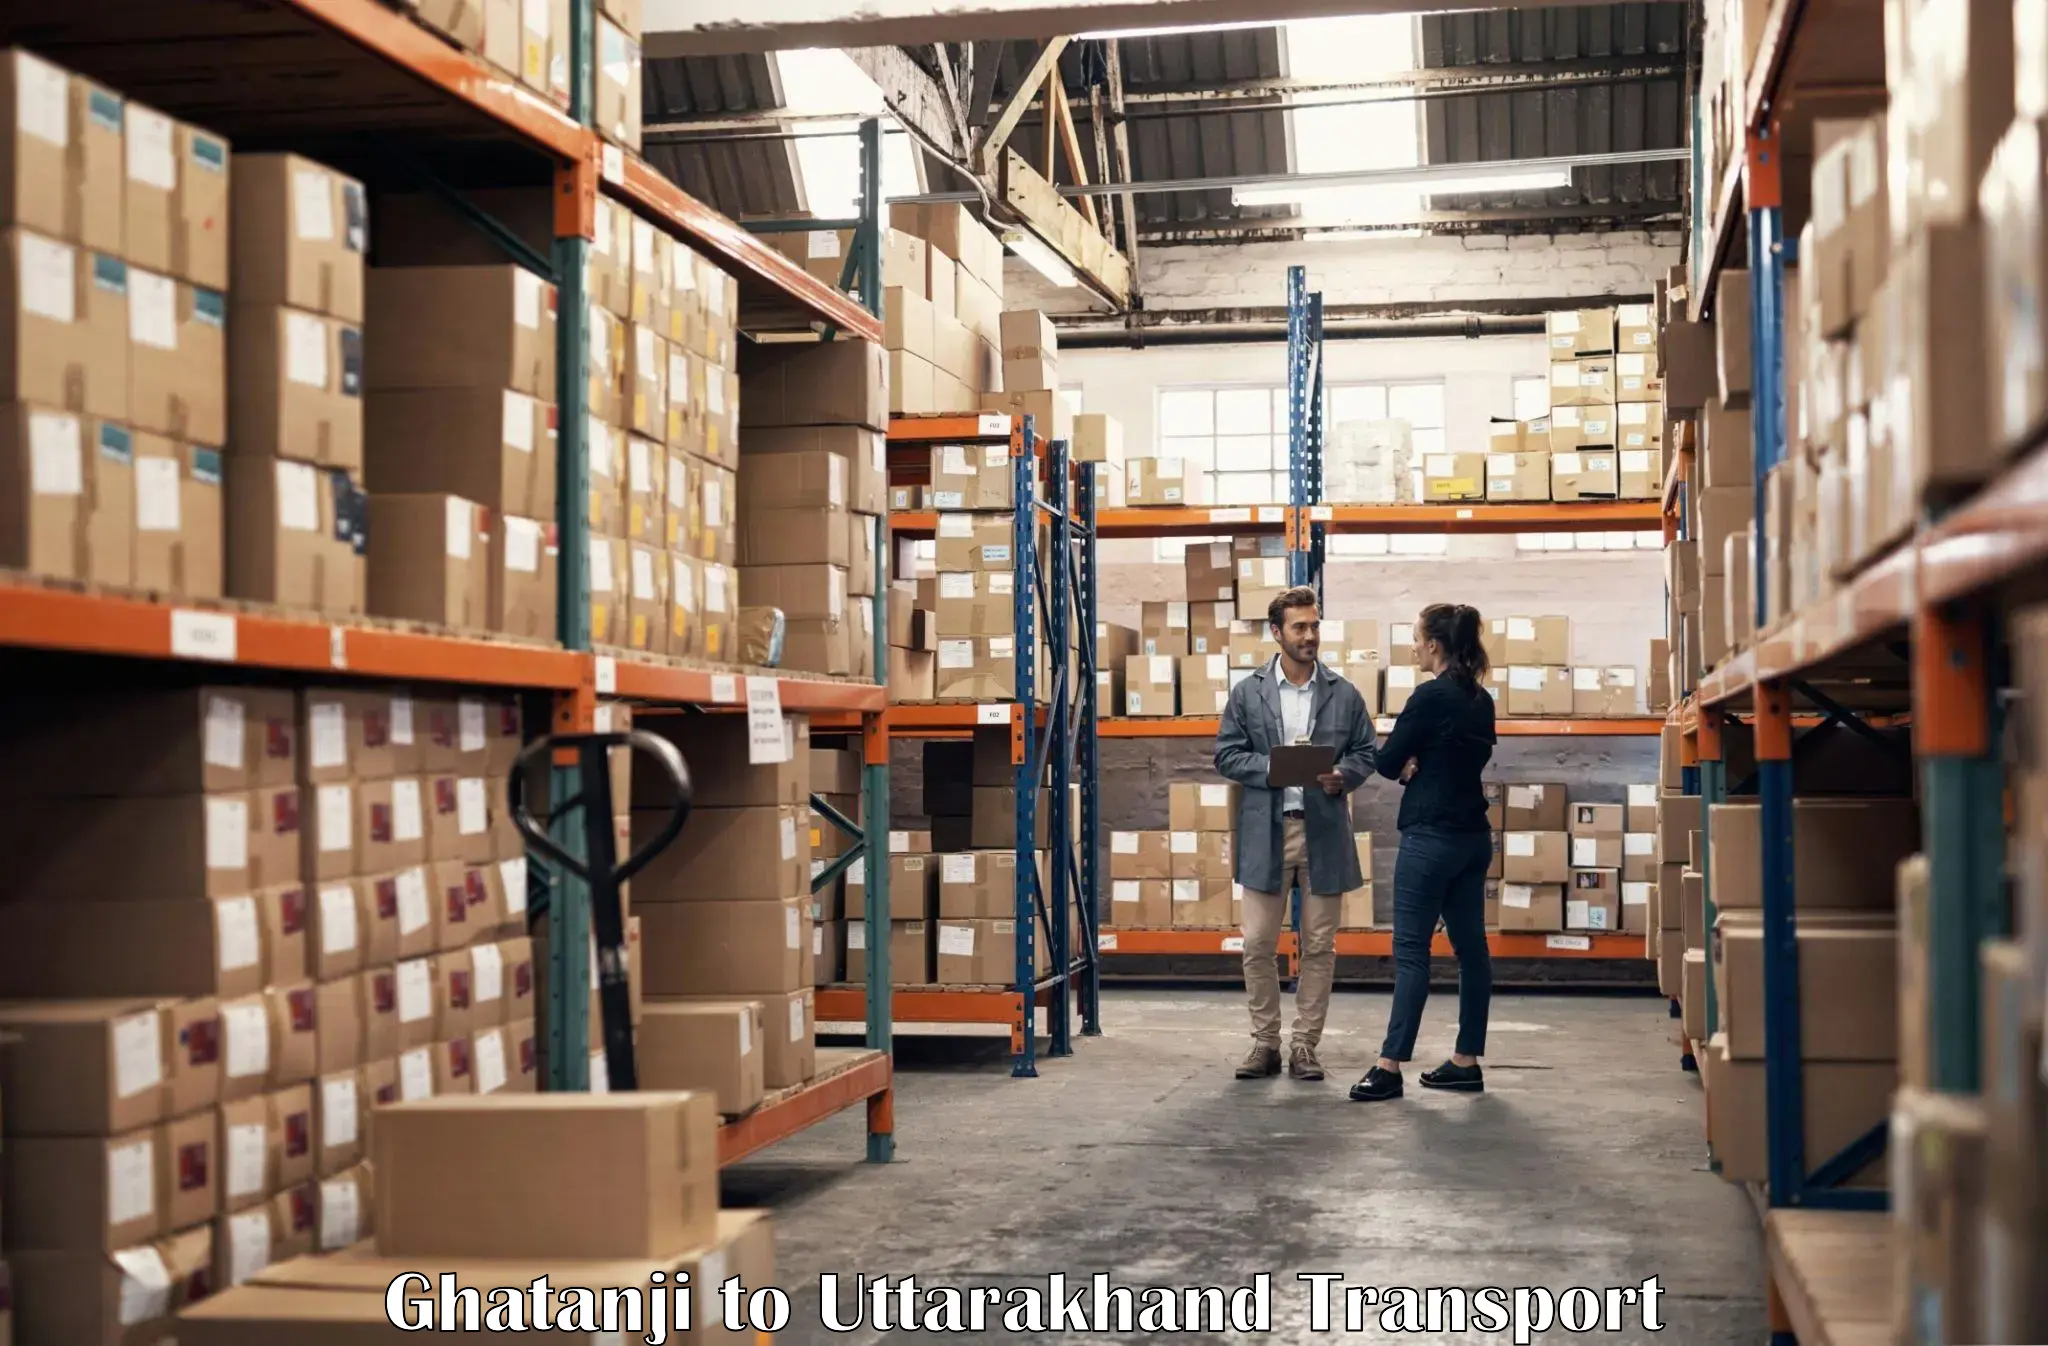 Shipping partner Ghatanji to Haridwar